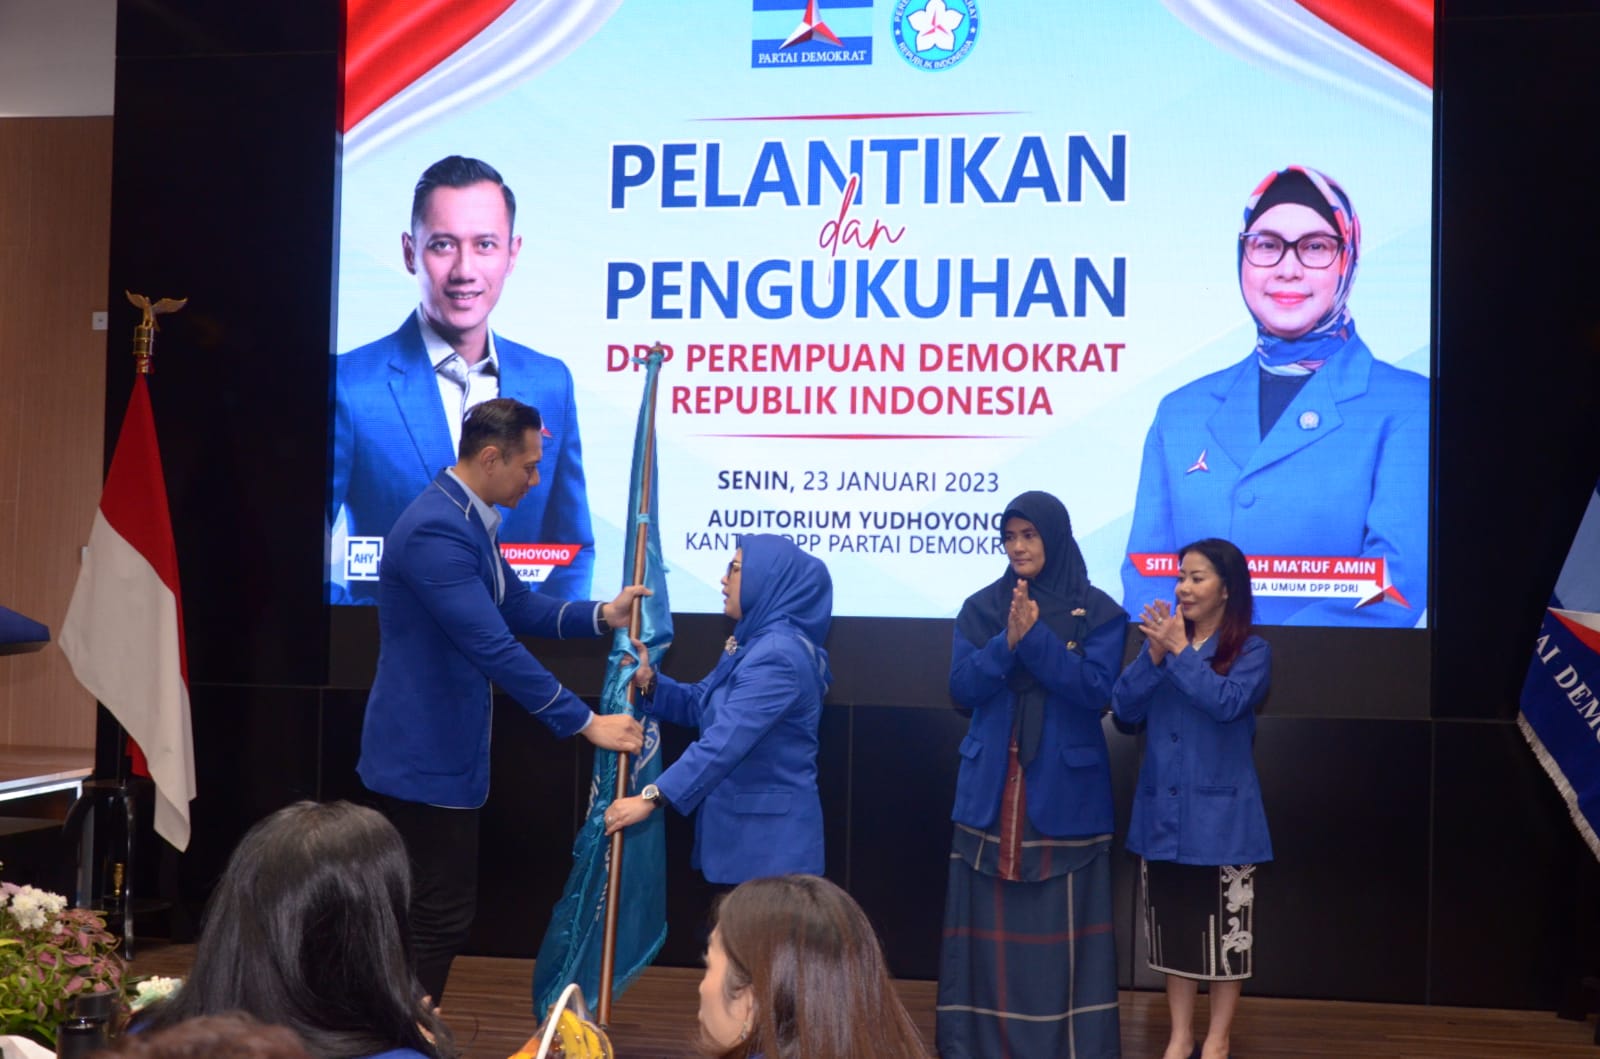 Ketua Umum Partai Demokrat Agus Harimurti Yudhoyono (AHY) resmi melantik pengurus Perempuan Demokrat Republik Indonesia